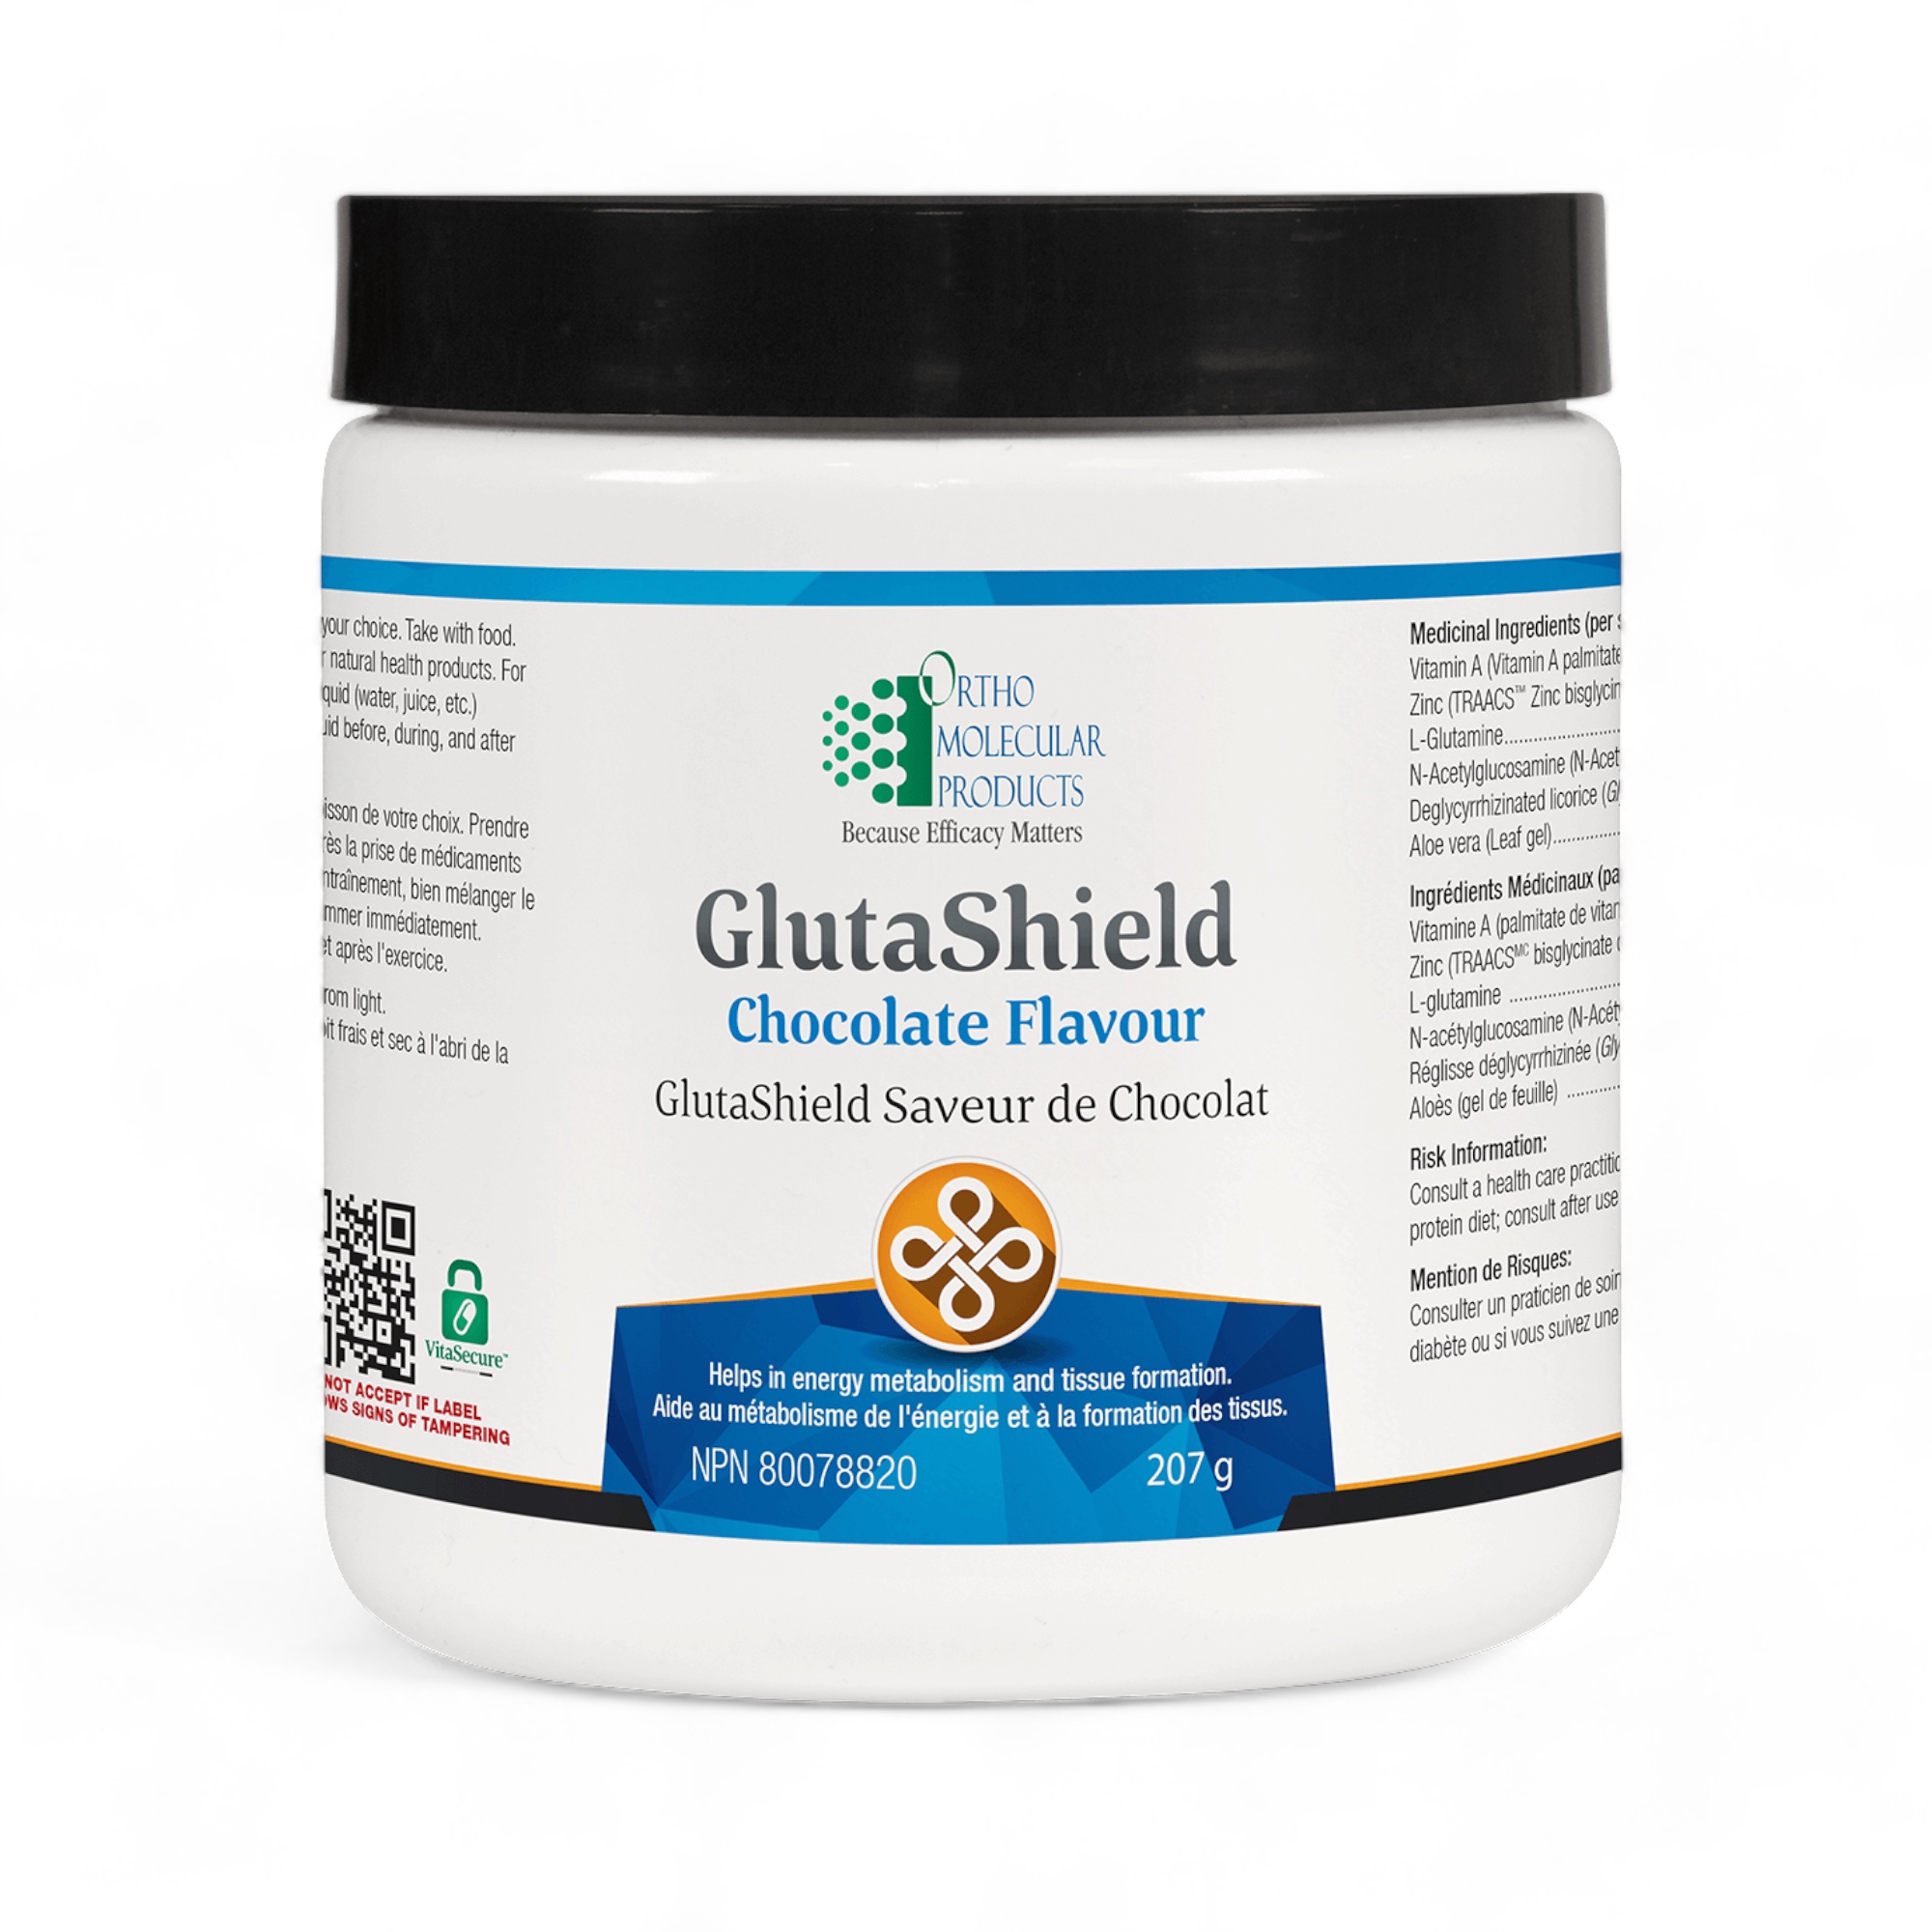 GlutaShield Chocolat Flavor 207g Ortho Molecular products